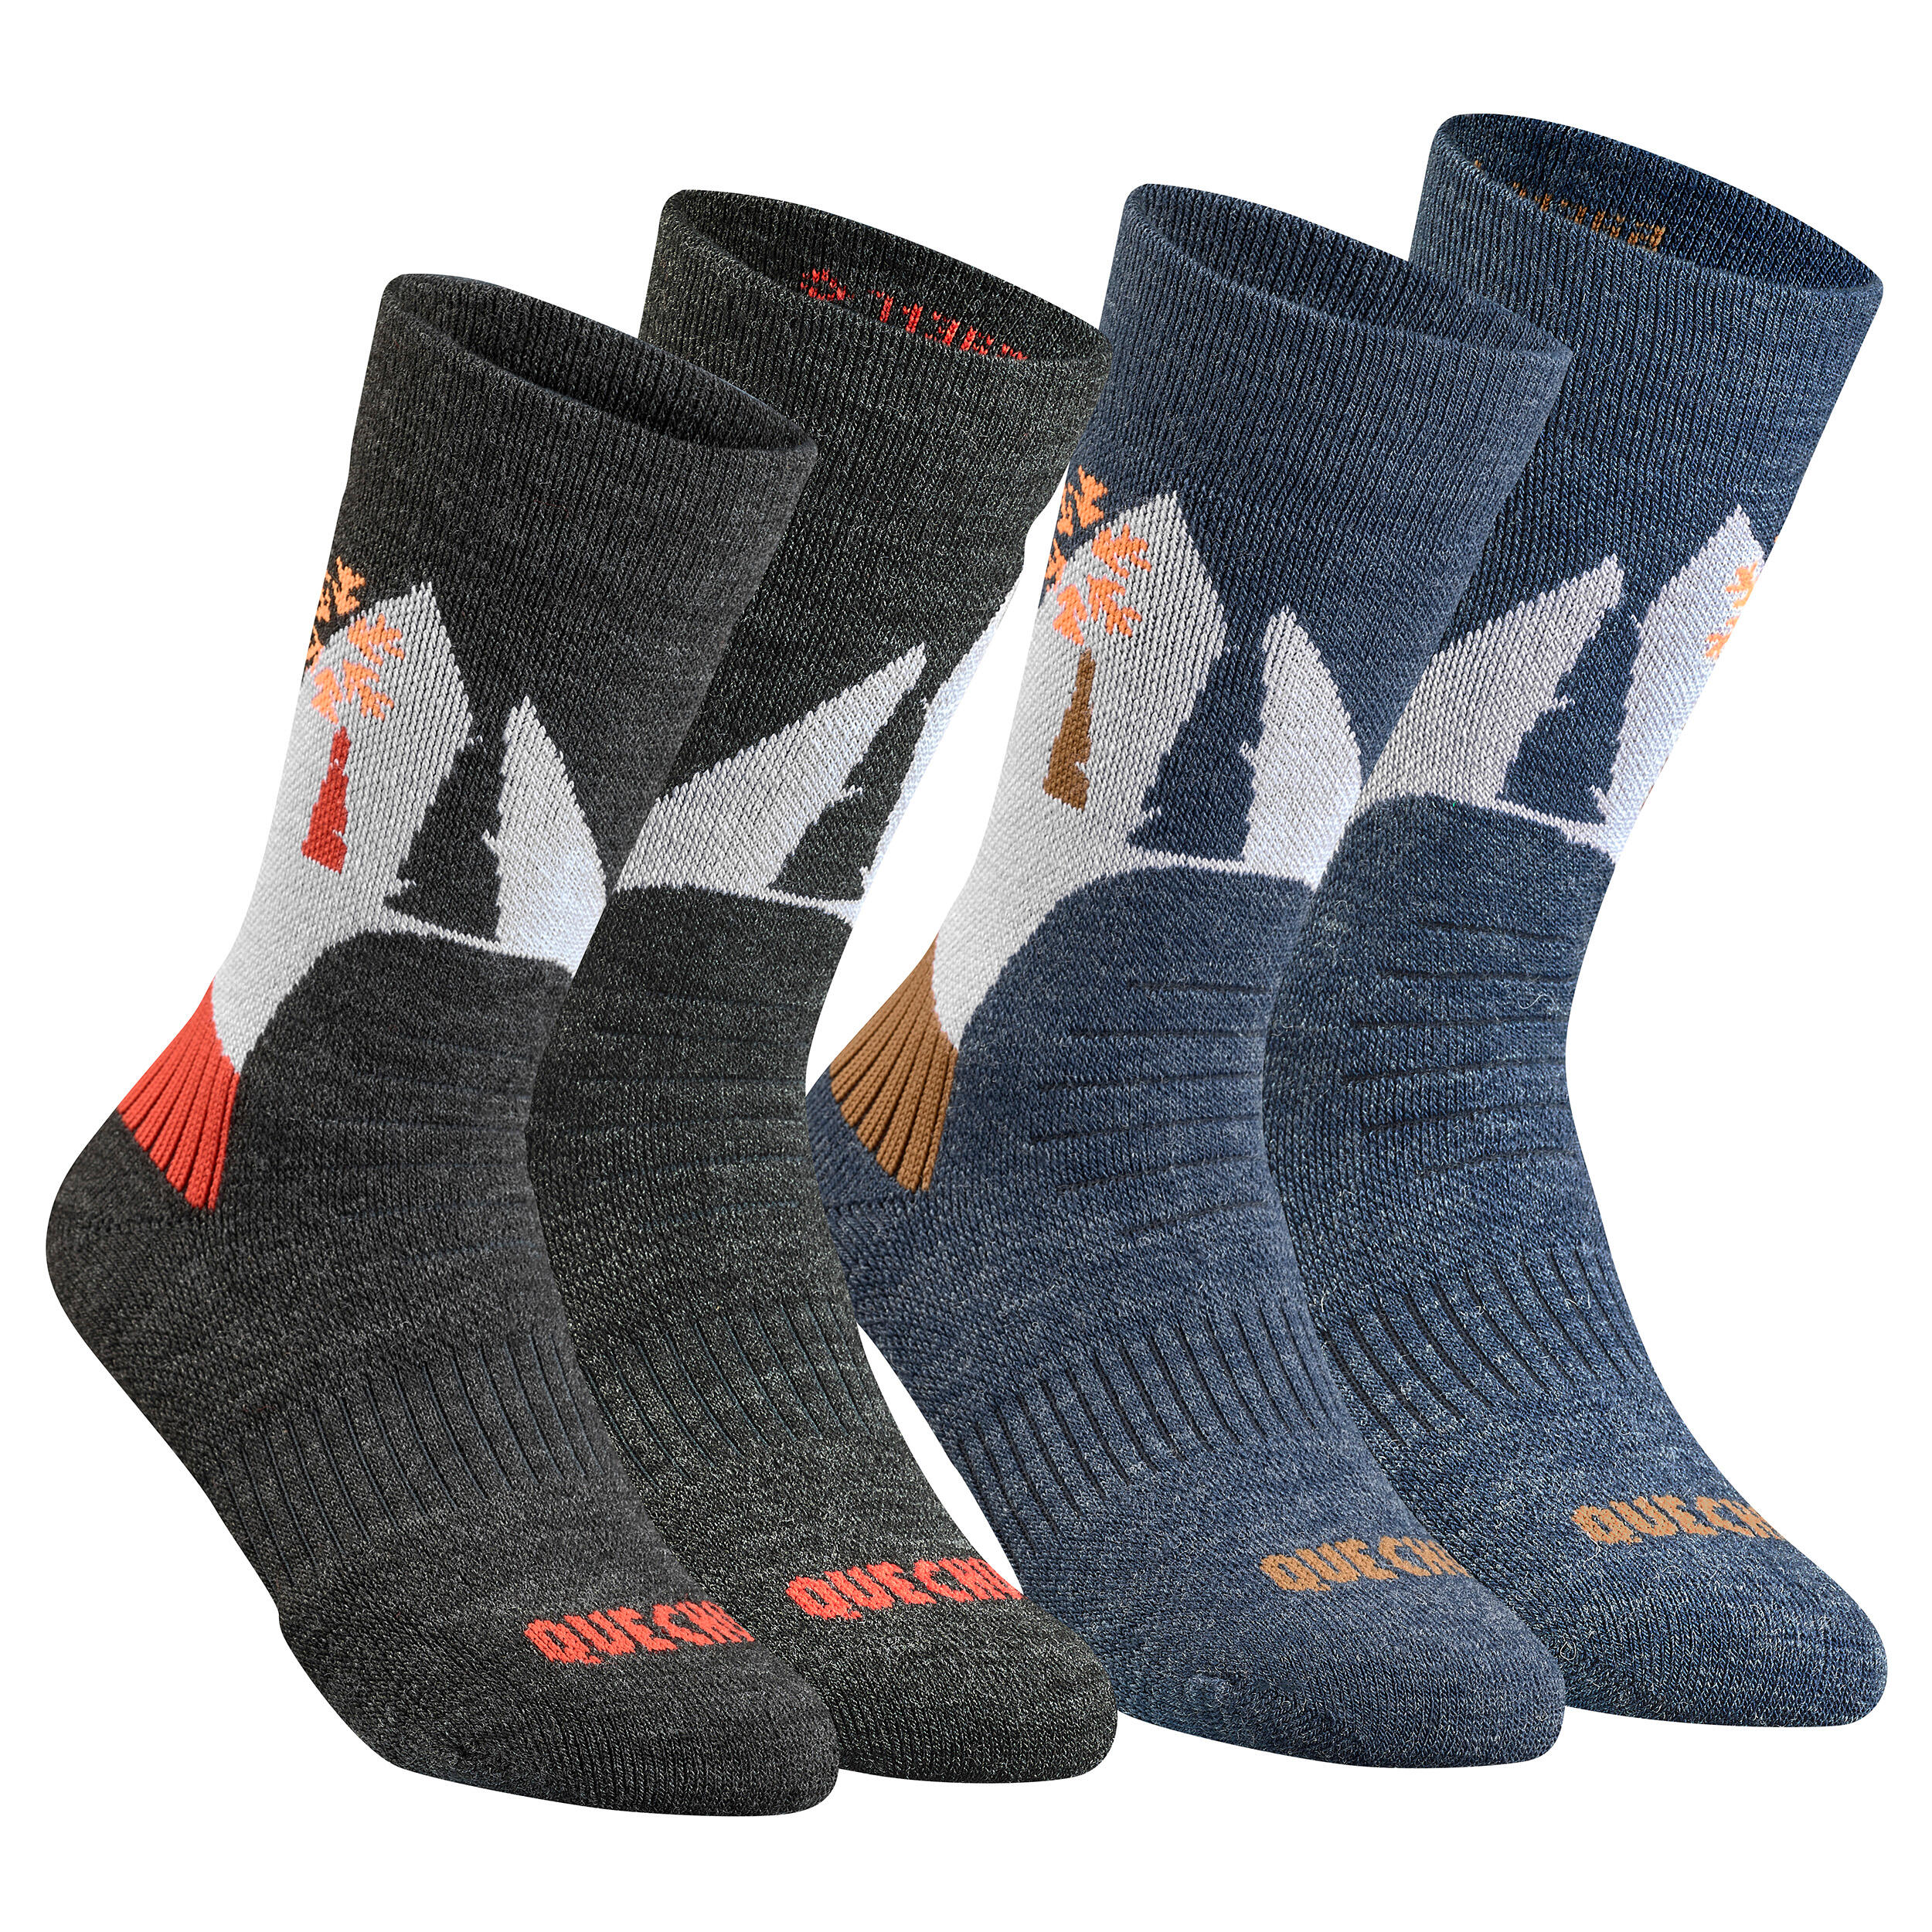 QUECHUA Children's warm hiking socks - SH100 WARM MID - x2 pairs